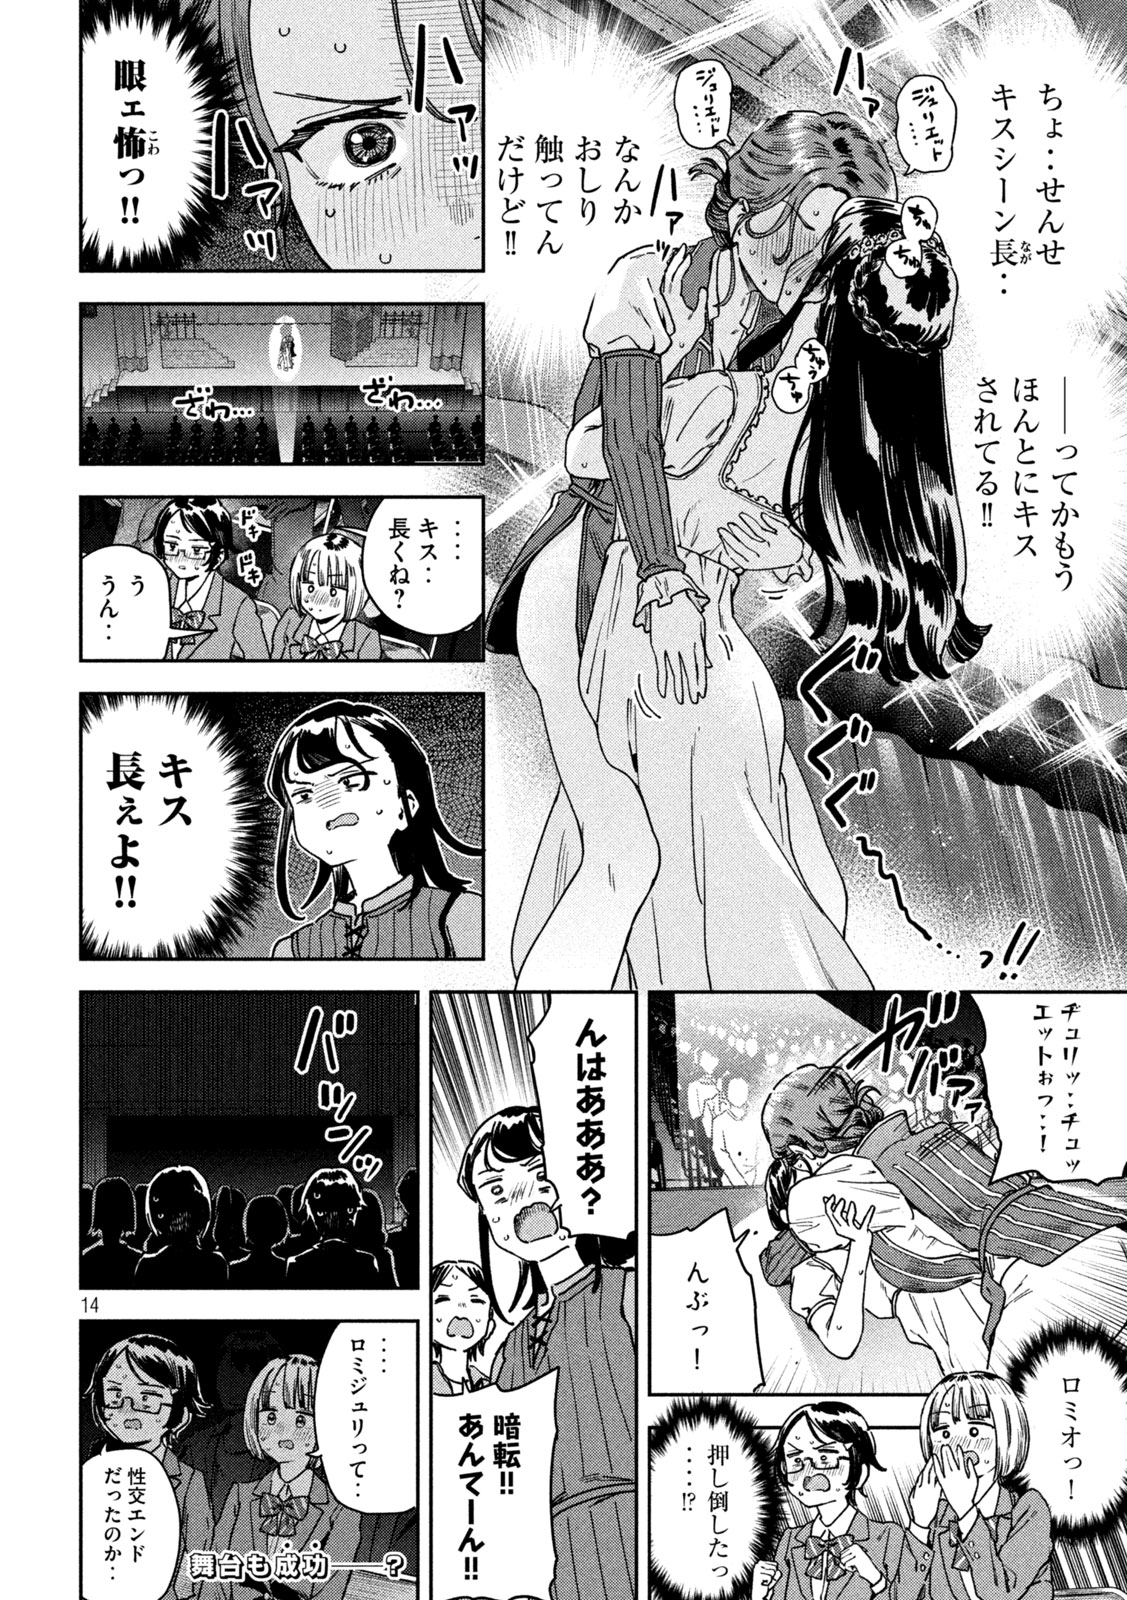 Myo-chan Sensei wa Kaku Katariki - Chapter 39 - Page 14